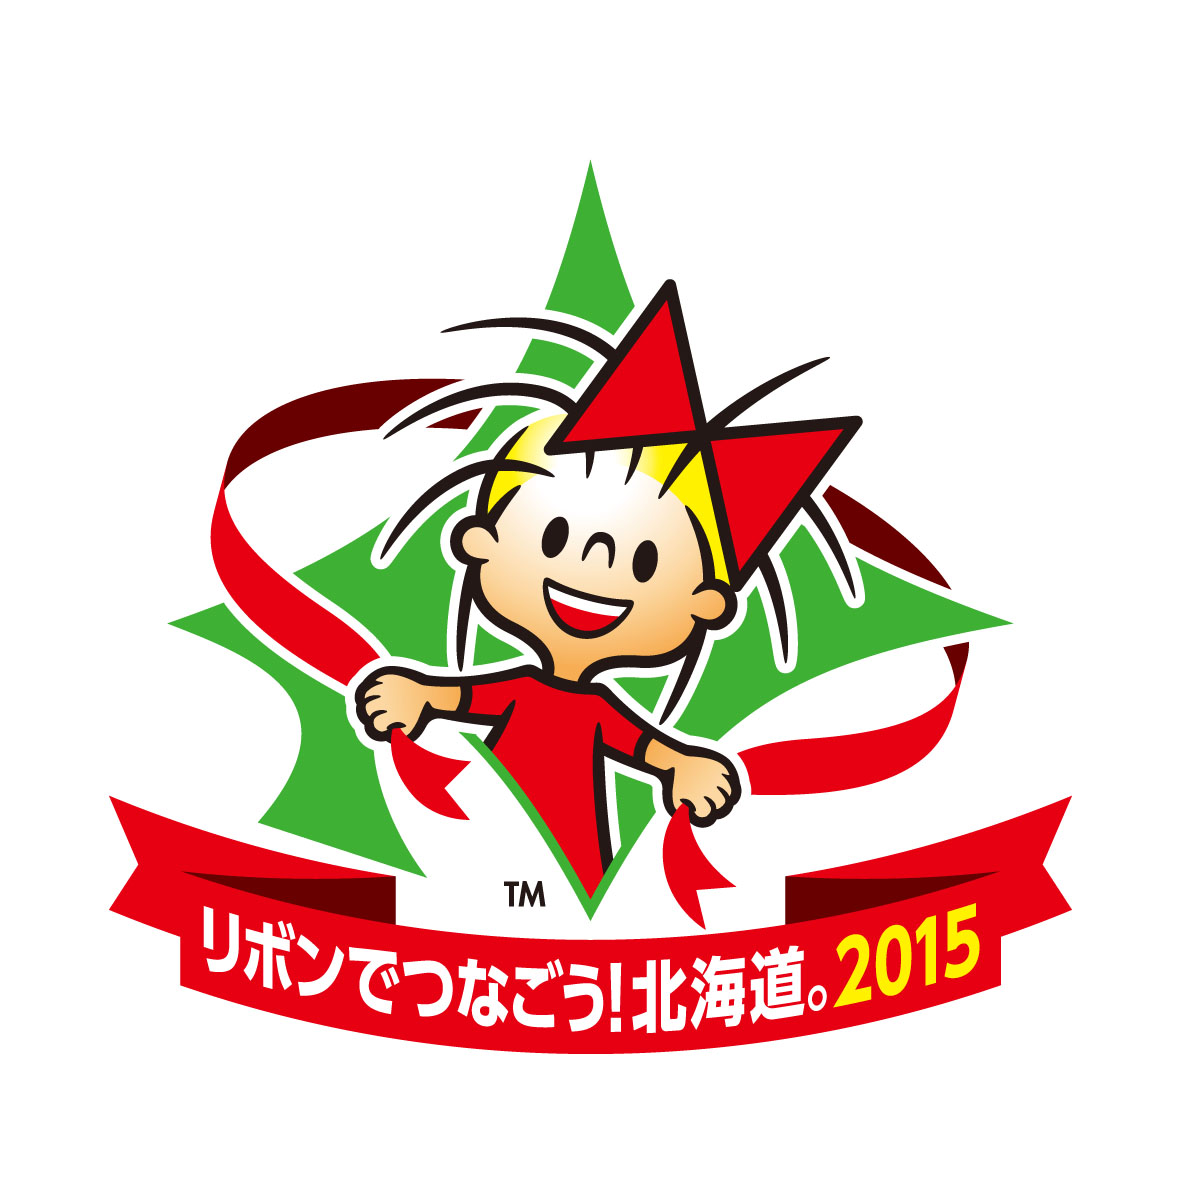 リボンでつなごう北海道_2015_logo.jpg